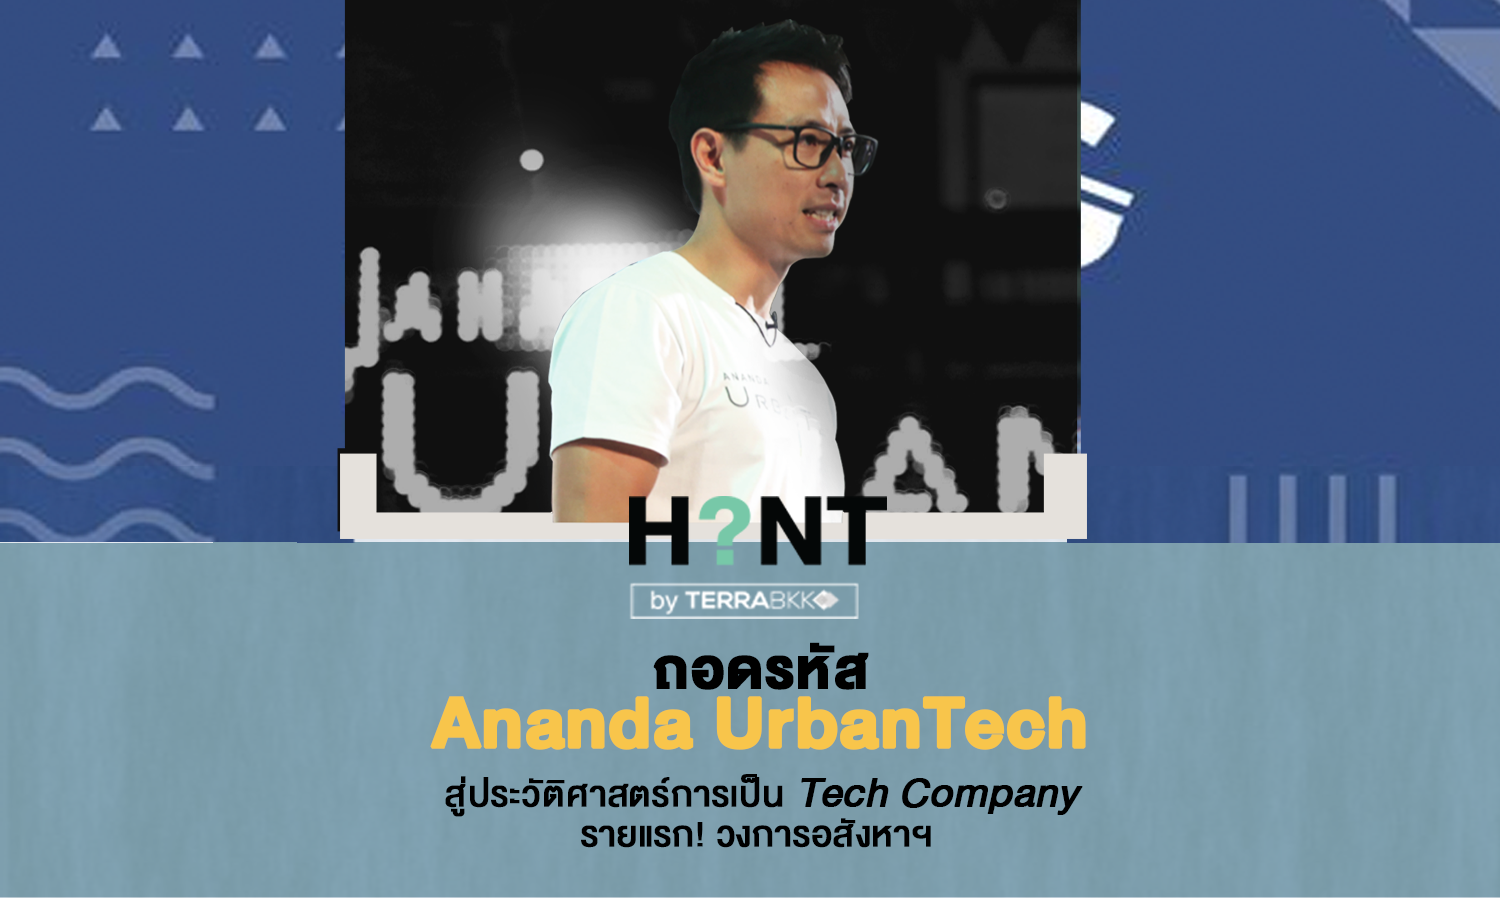 ถอดรหัส Ananda UrbanTech สู่ประวัติศาสตร์การเป็น Tech Company รายแรก! วงการอสังหาฯ 